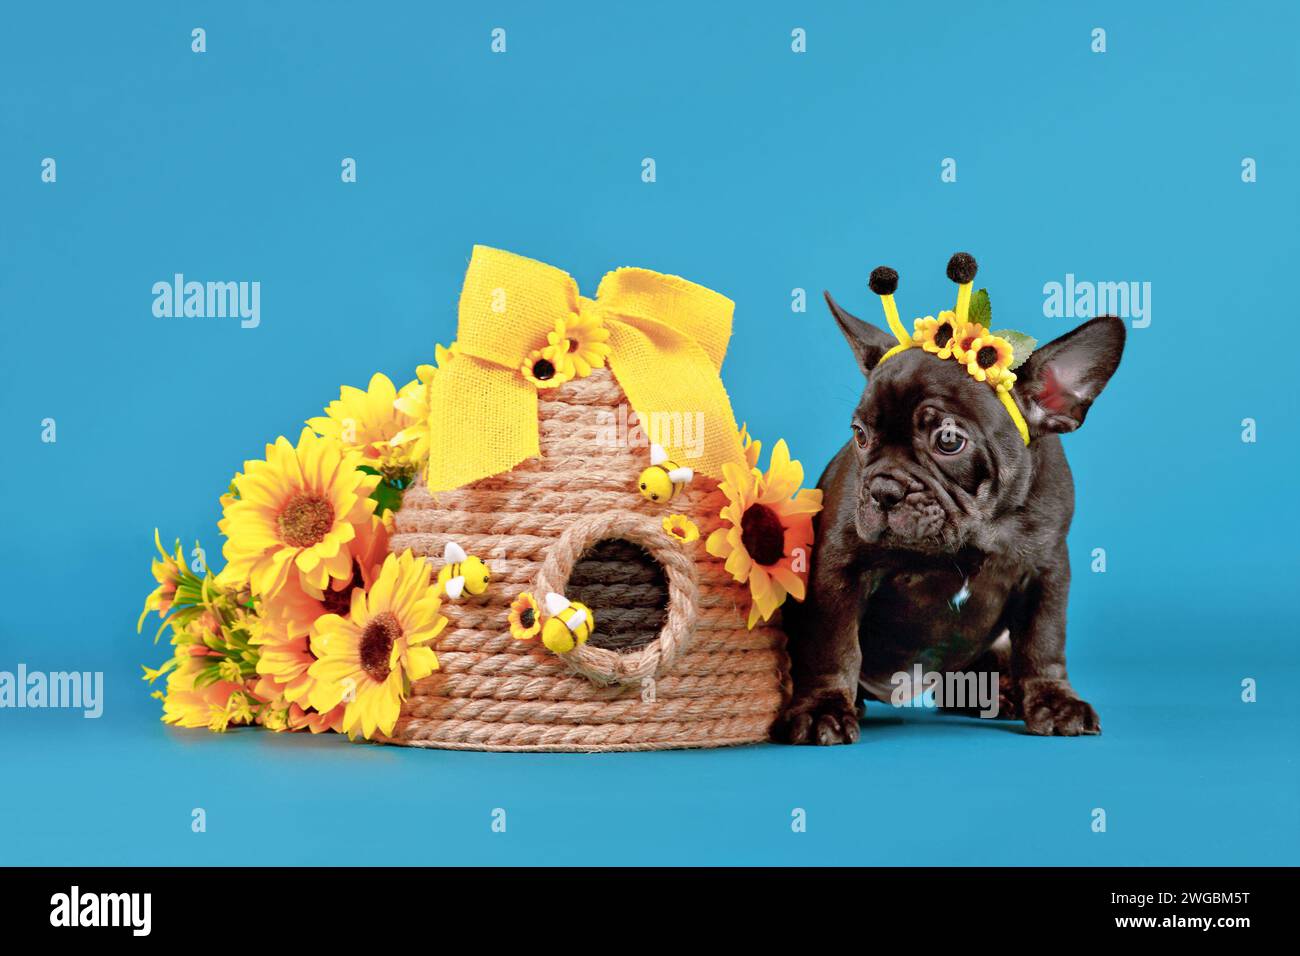 Simpatico cucciolo di cane Bulldog francese nero con corna in costume di api seduto accanto all'alveare e girasoli su sfondo blu Foto Stock